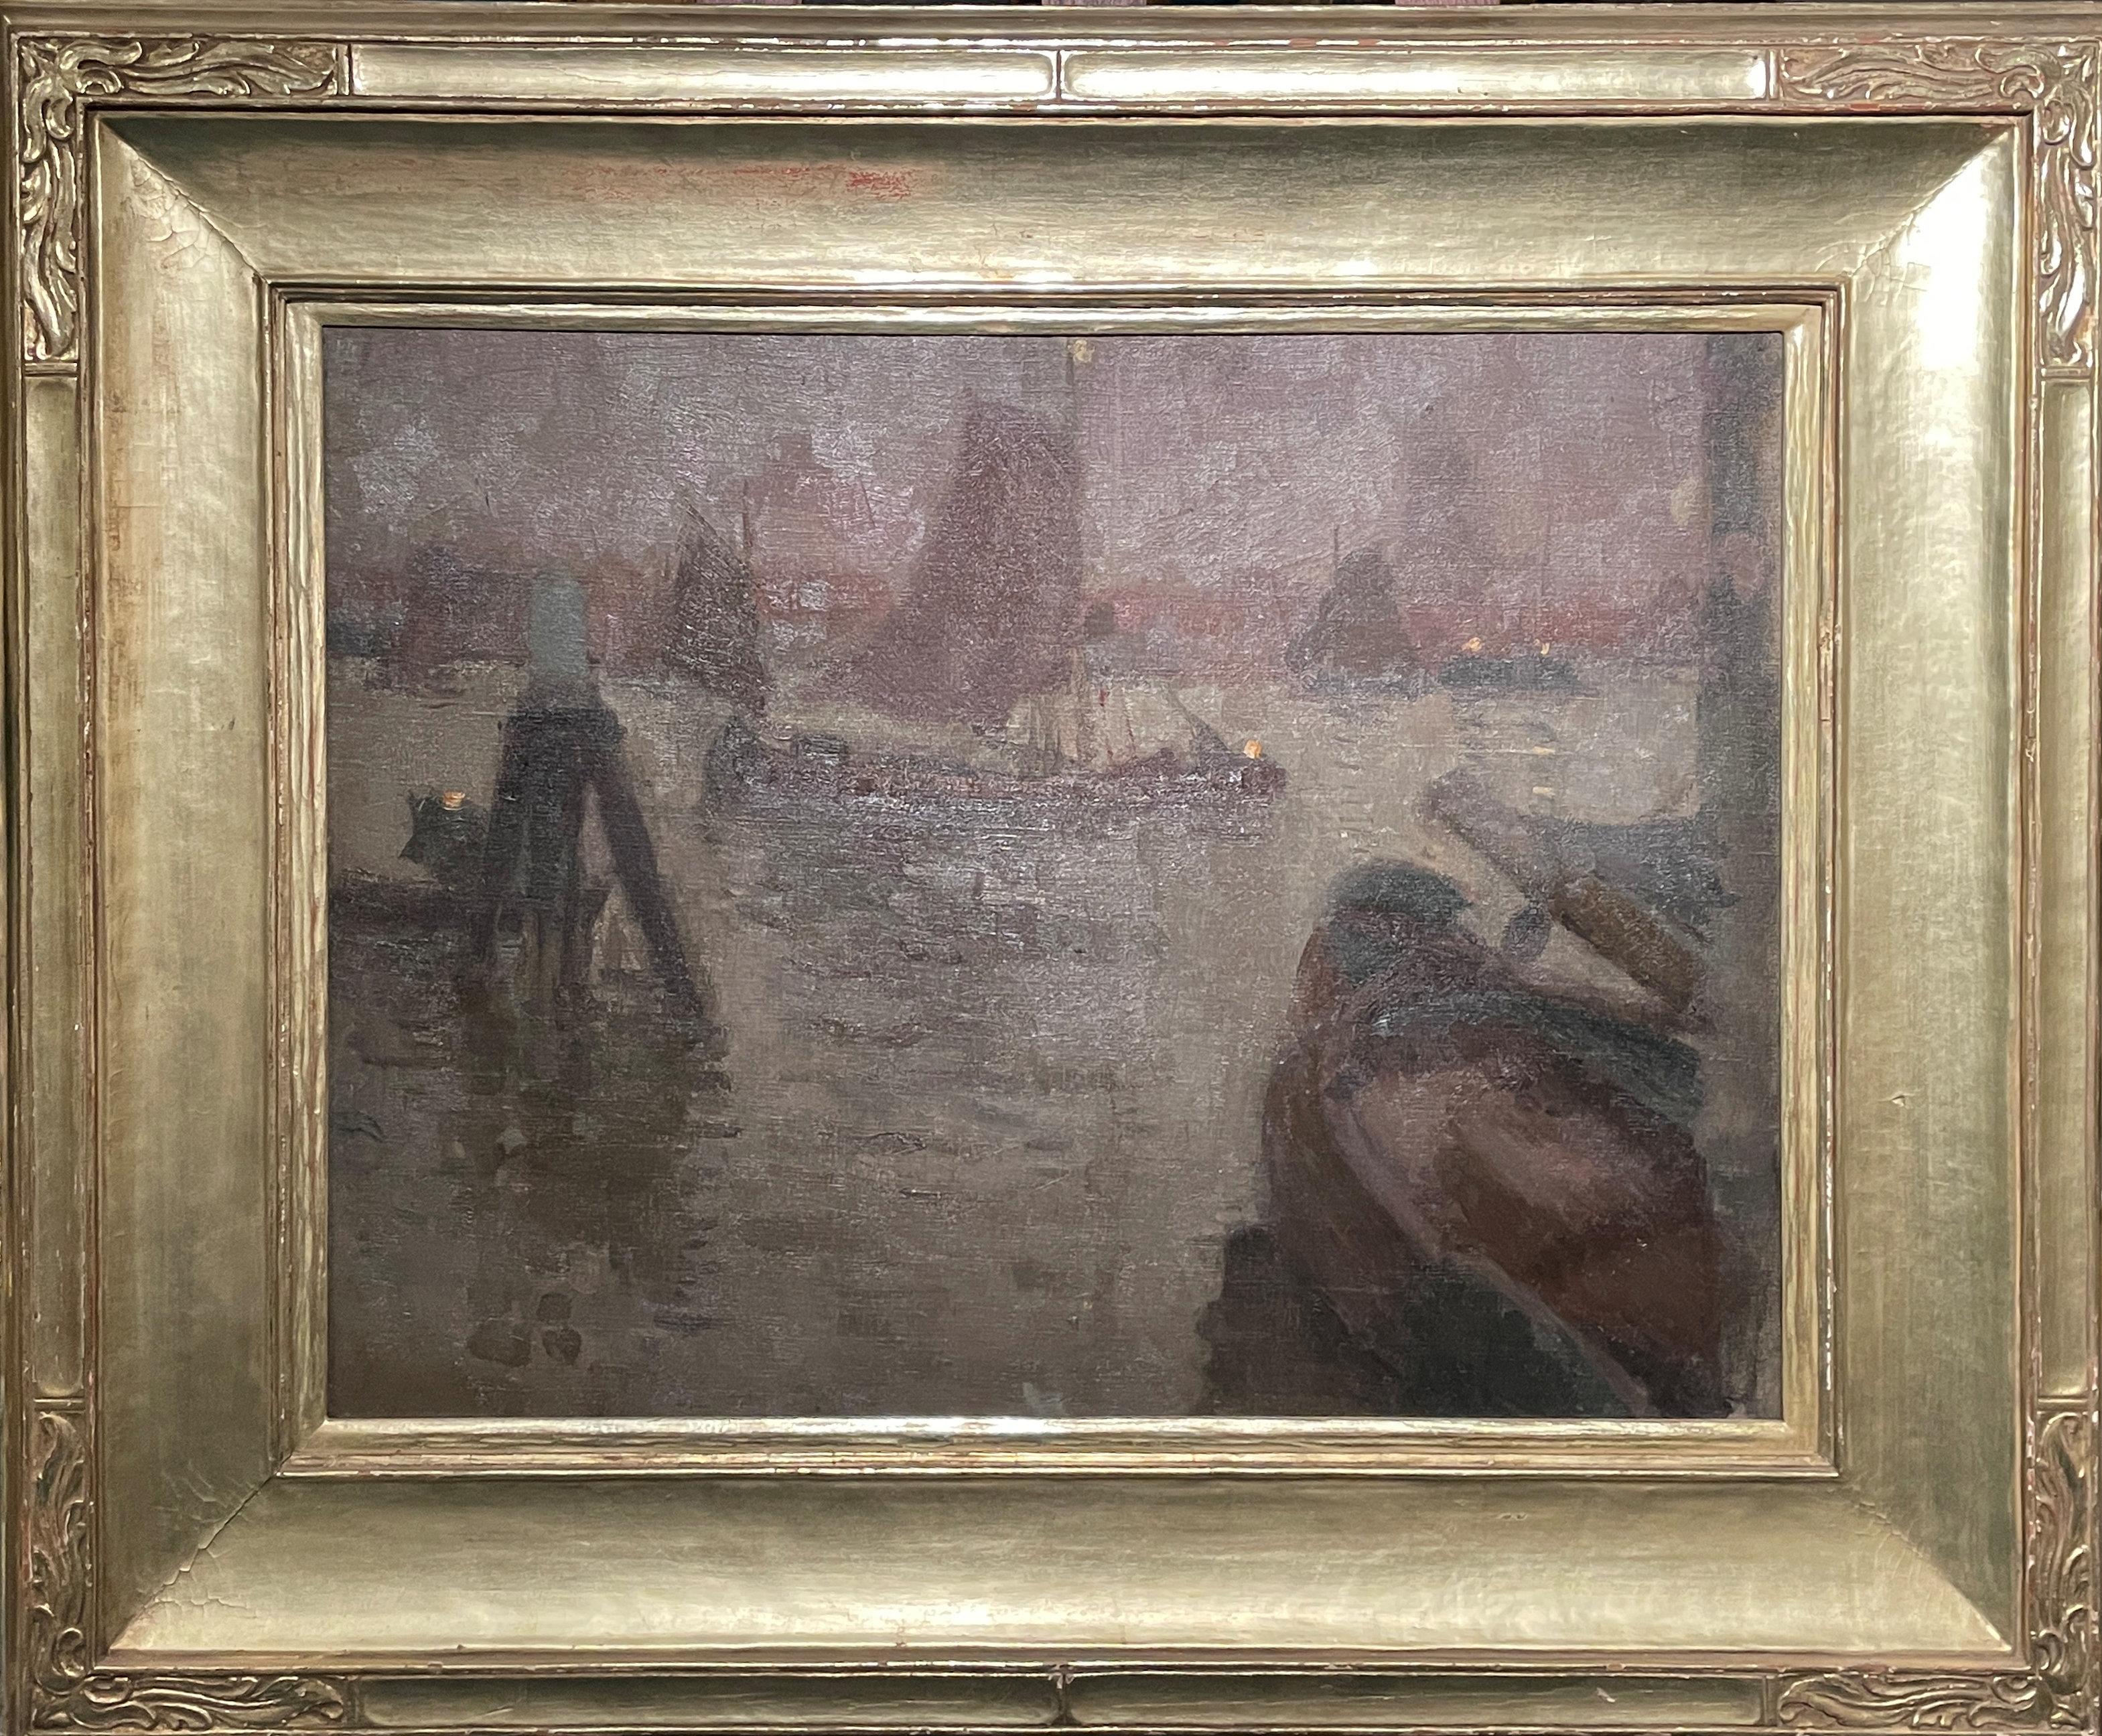 Eugène Laurent Vail (1857 - 1934)
Soir de Novembre, Dordrecht
Huile sur toile
19 1/4 x 25 3/4 pouces
Signé en bas à gauche ; titré en deux endroits sur le châssis avec diverses autres inscriptions, estampillé "MADAME G:VAIL A" et inscrit "177" à